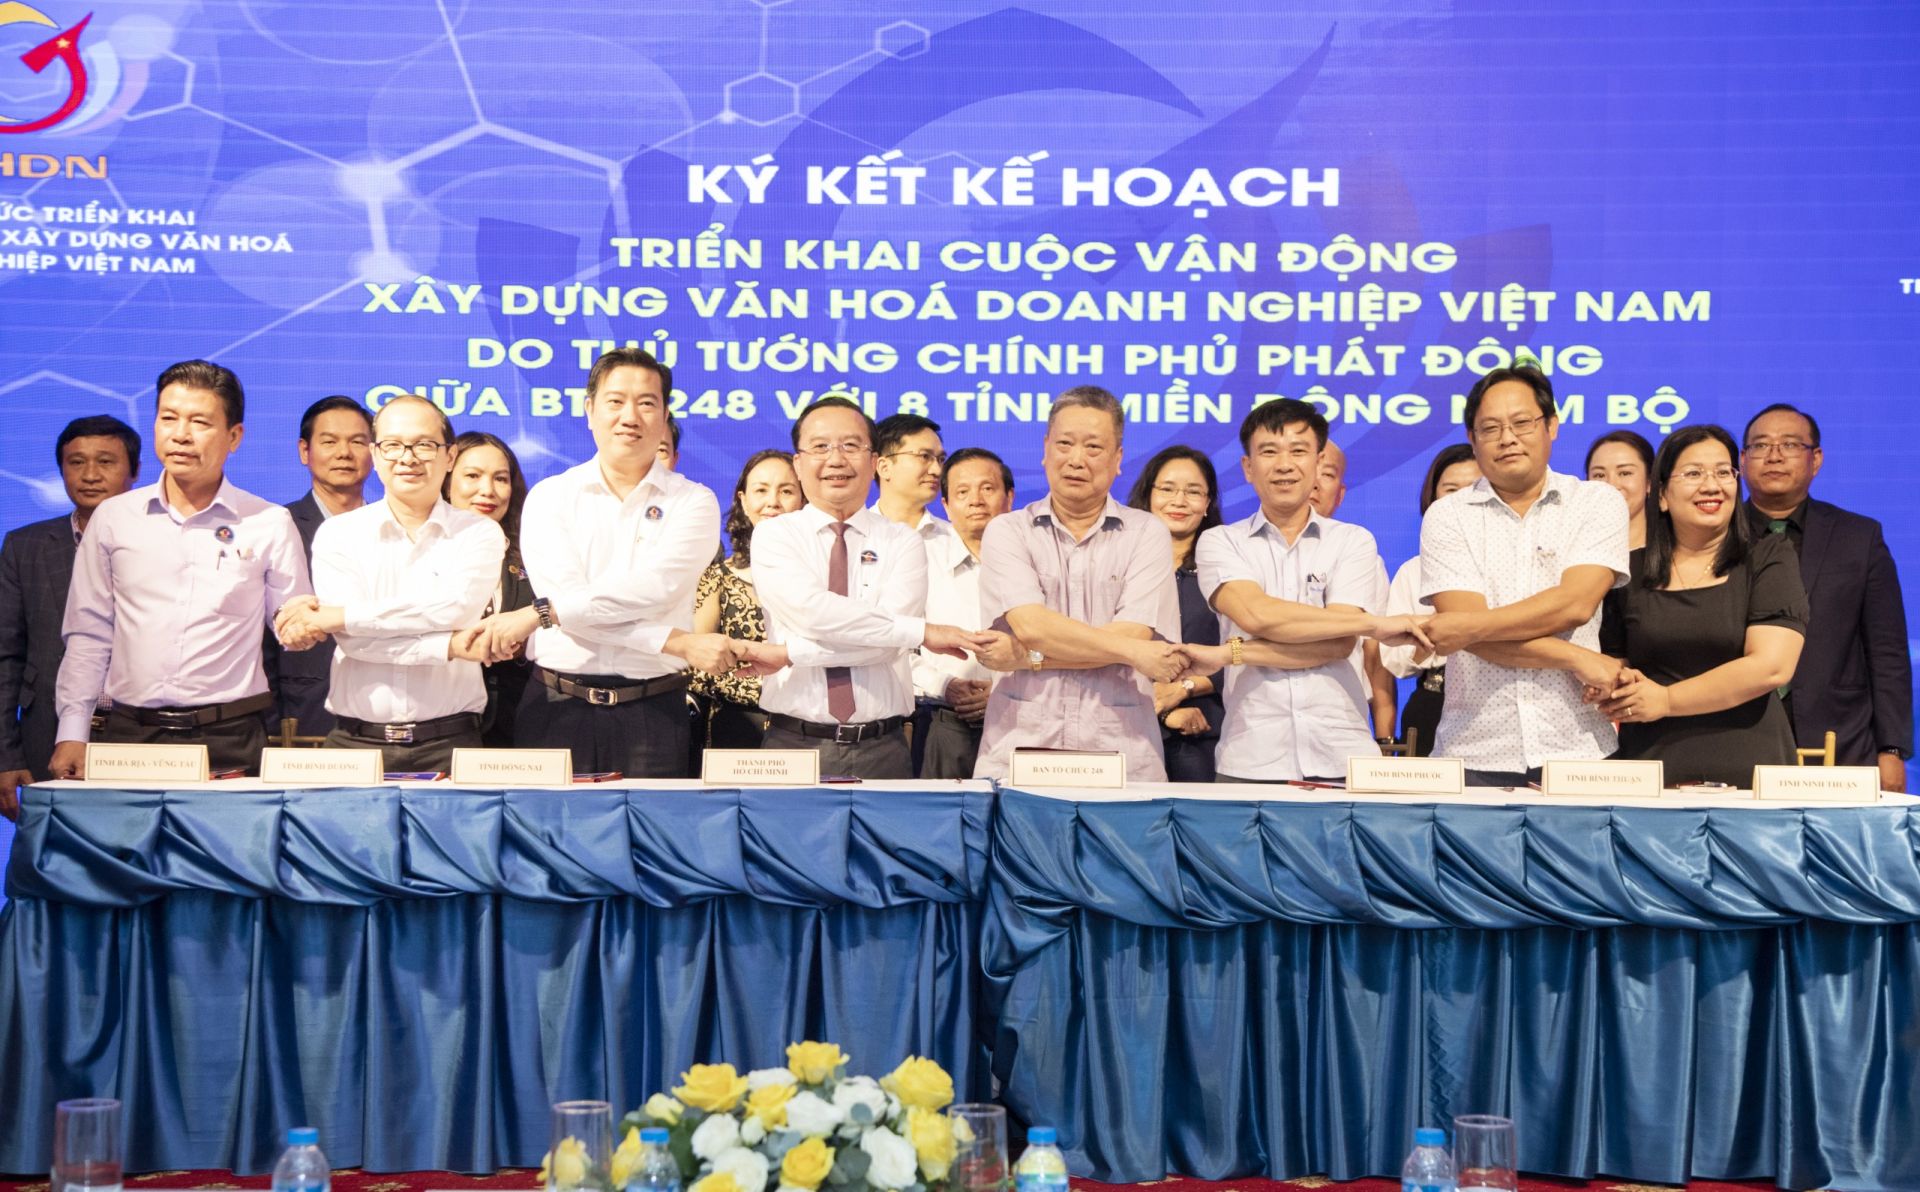 Hội nghị triển khai Bộ tiêu chí văn hóa kinh doanh Việt Nam đối với 8 tỉnh khu vực Đông Nam Bộ lần này nhằm khẳng định vị trí, vai trò và tầm quan trọng của văn hóa doanh nghiệp đối với sự phát triển kinh tế bền vững